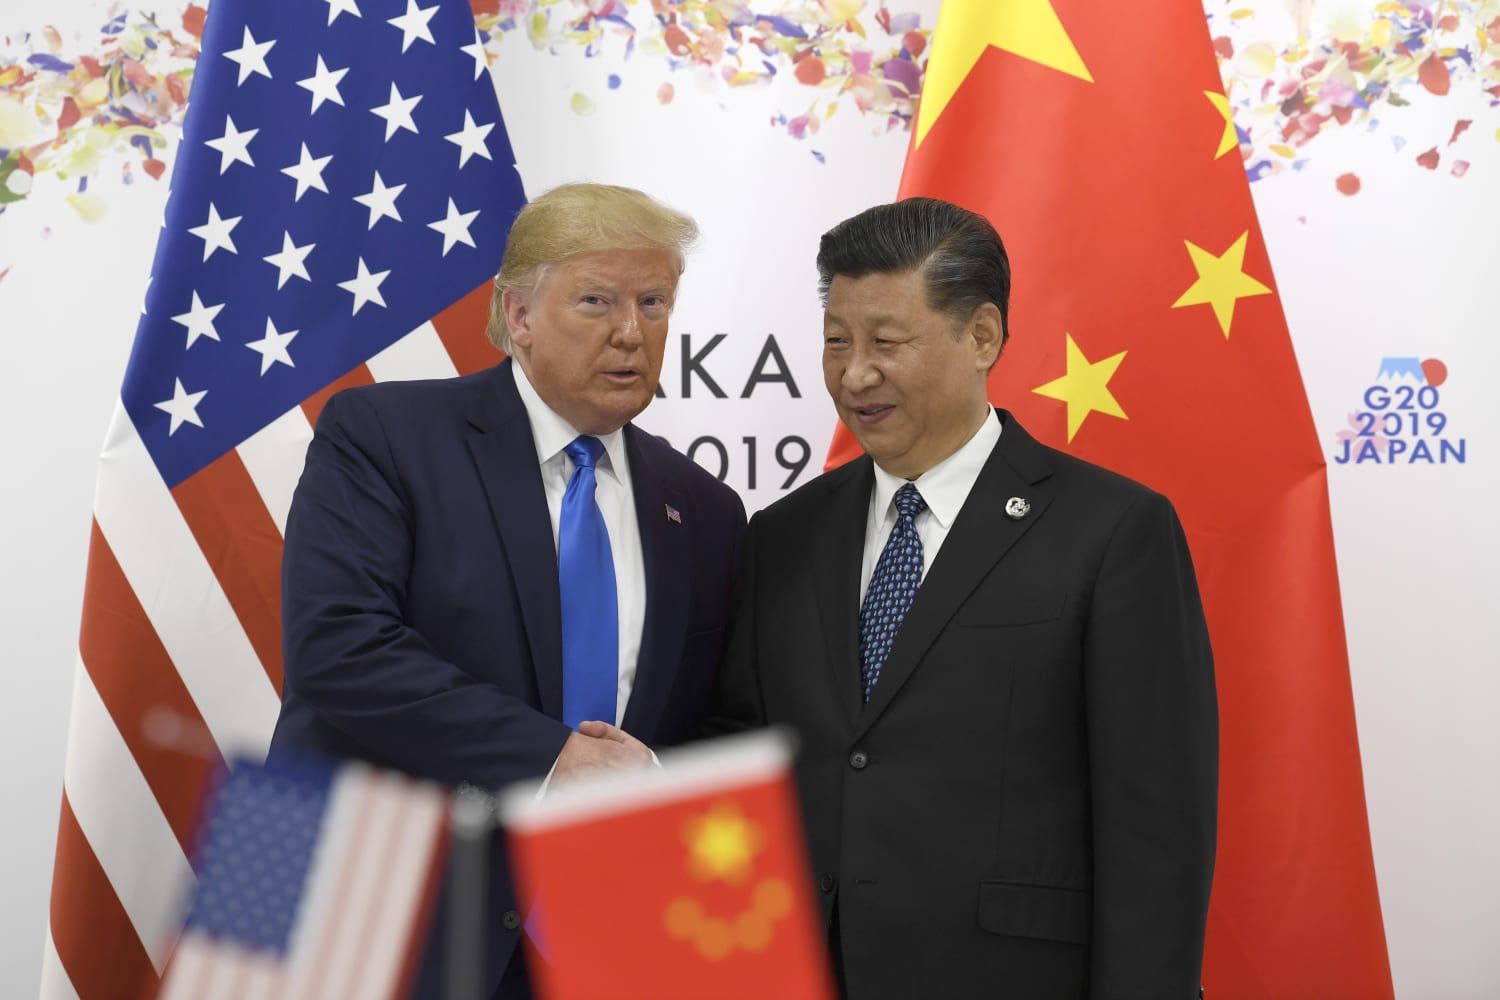 Trump says U.S. will hold off on new China tariffs as trade talks restart